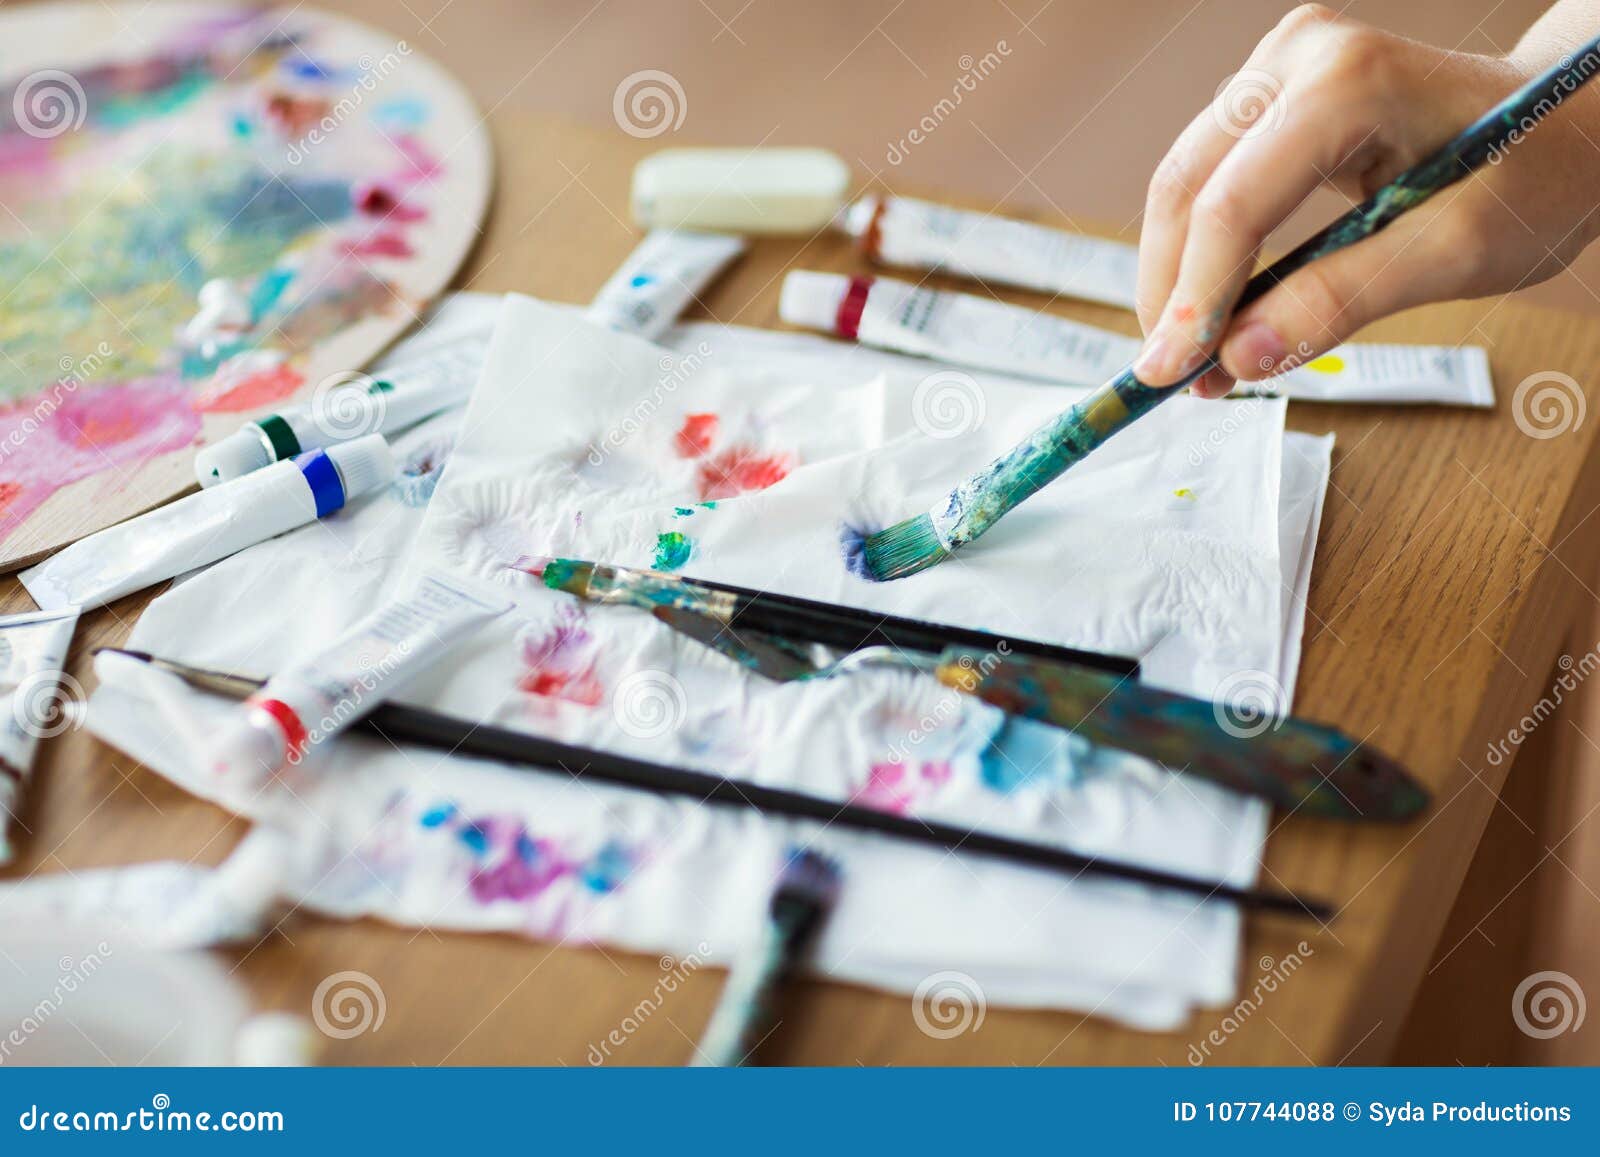 Main D'artiste Avec Des Tubes De Pinceau, De Papier Et De Peinture Photo  stock - Image du peinture, couleur: 107744088